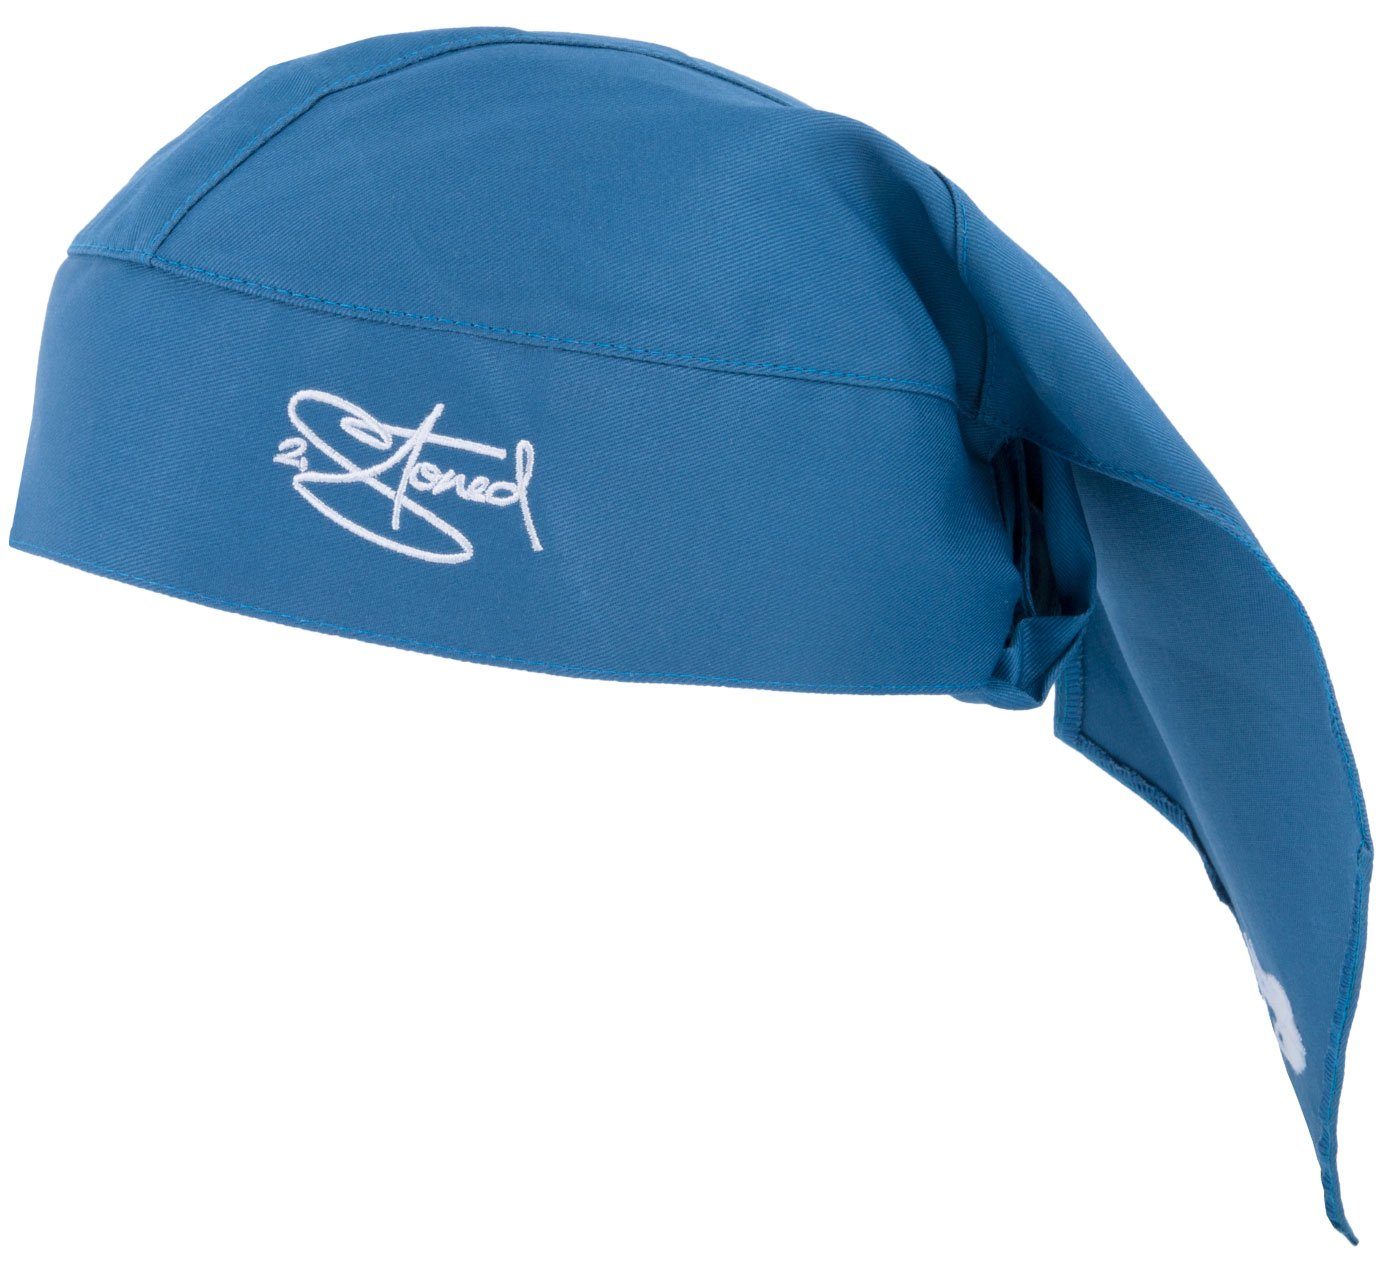 2Stoned Bandana Kopftuch Biker Cap Classic bestickt für Damen, Herren und Kinder, Einheitsgröße Steel Blue